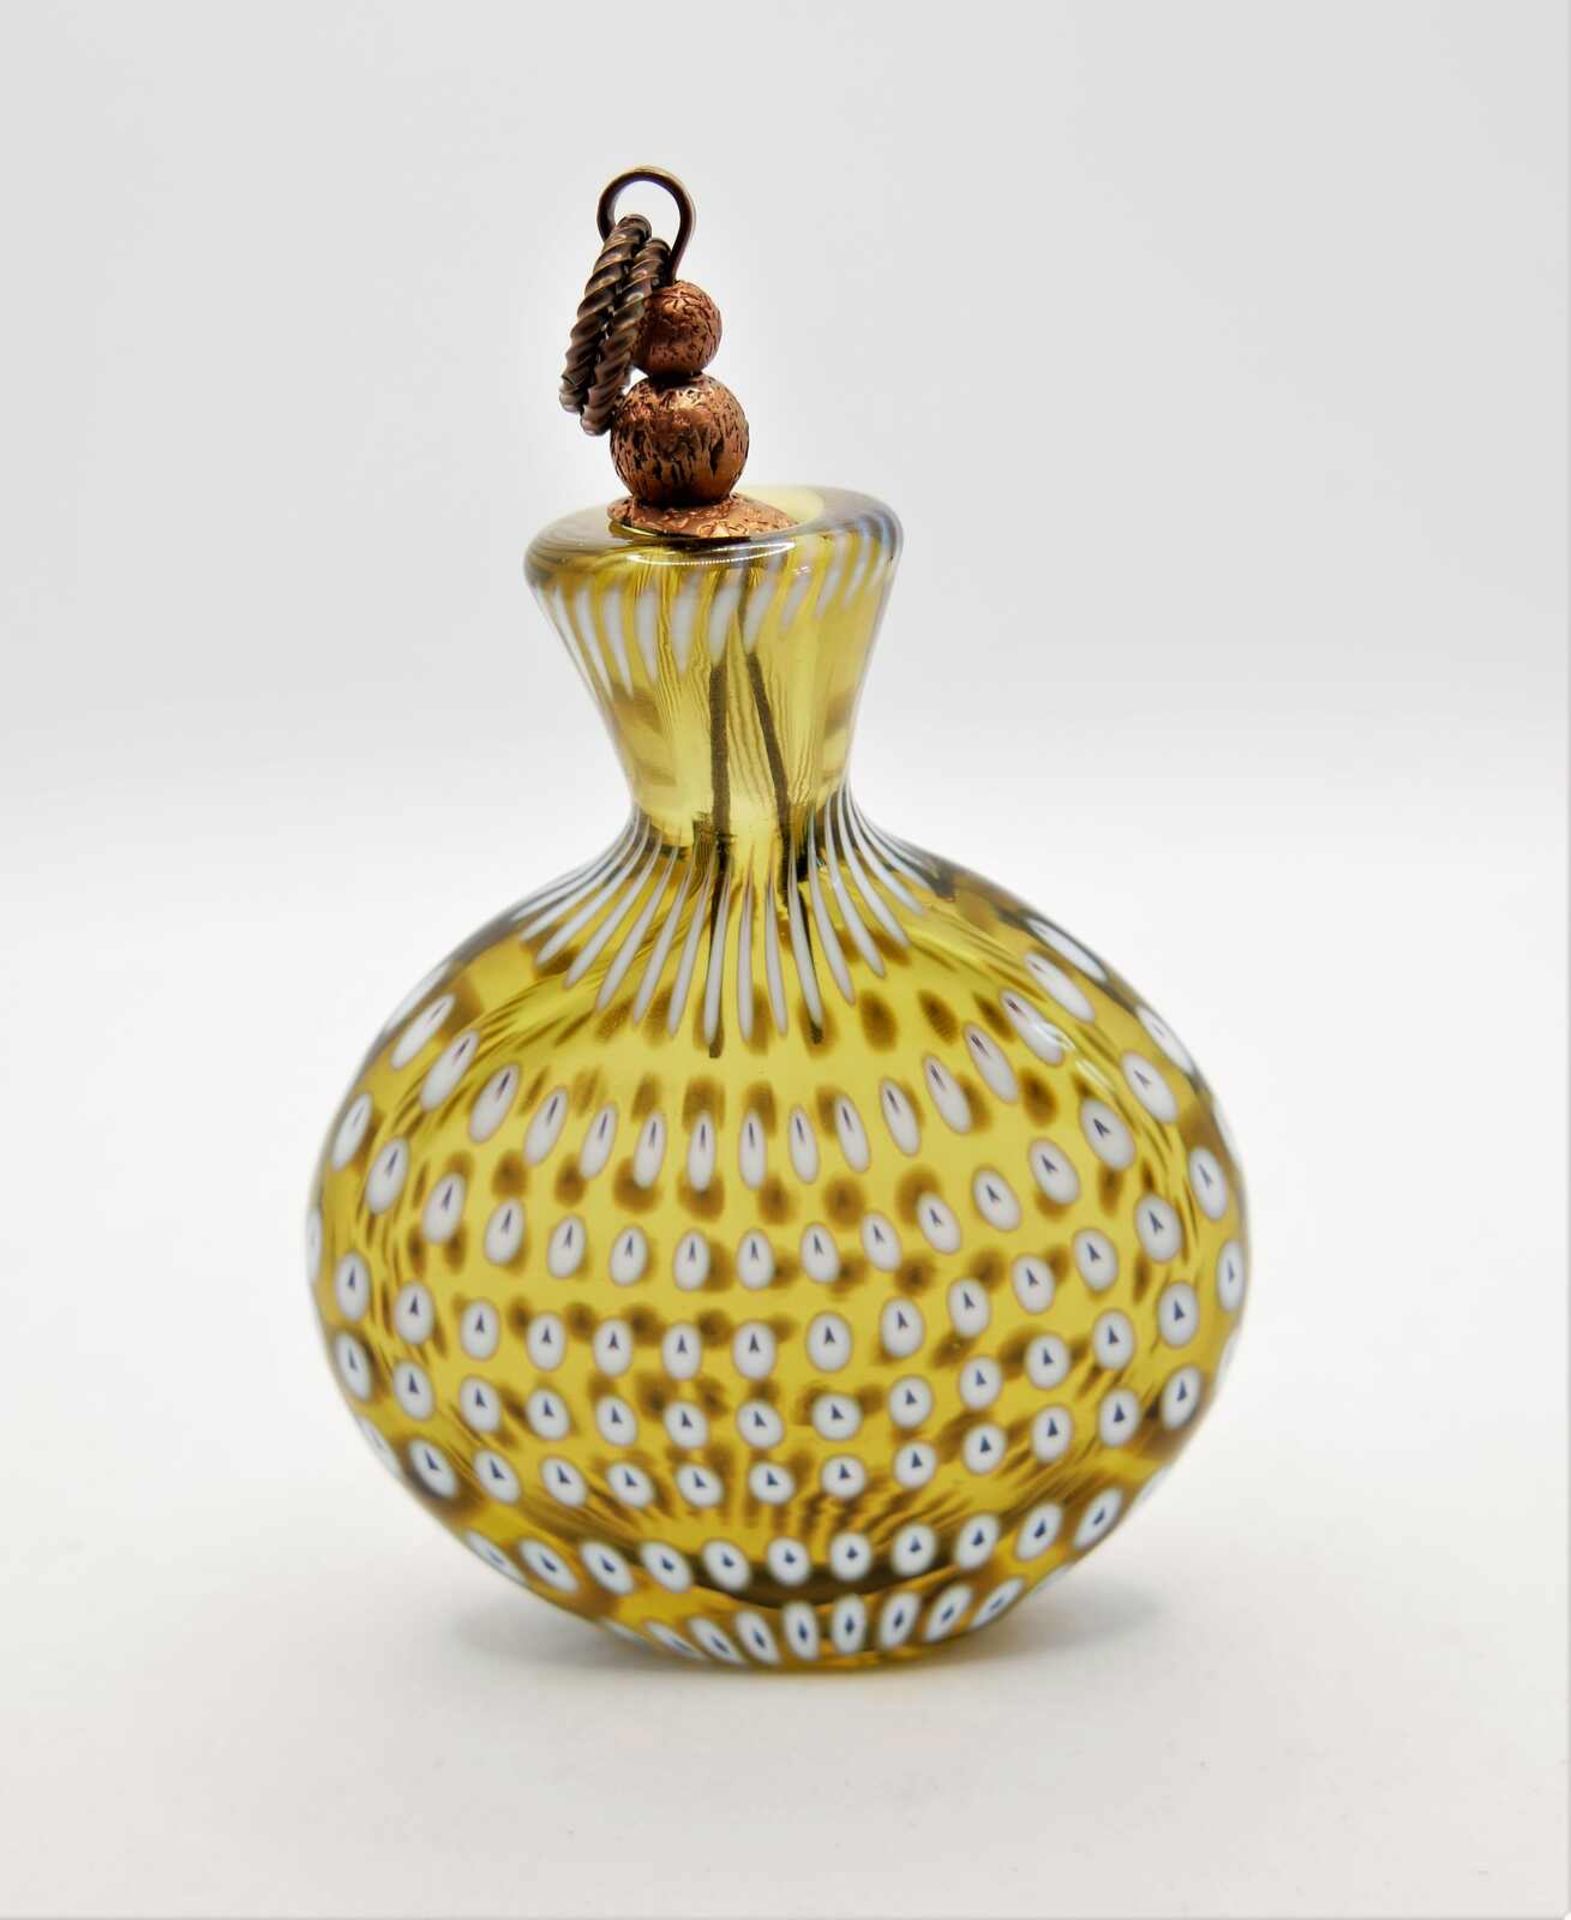 Schnupftabakflasche Glas aus Sammlung, Bixl, braunes Glas mit weißen Einschmelzungen, mit Stöpsel - Image 2 of 2